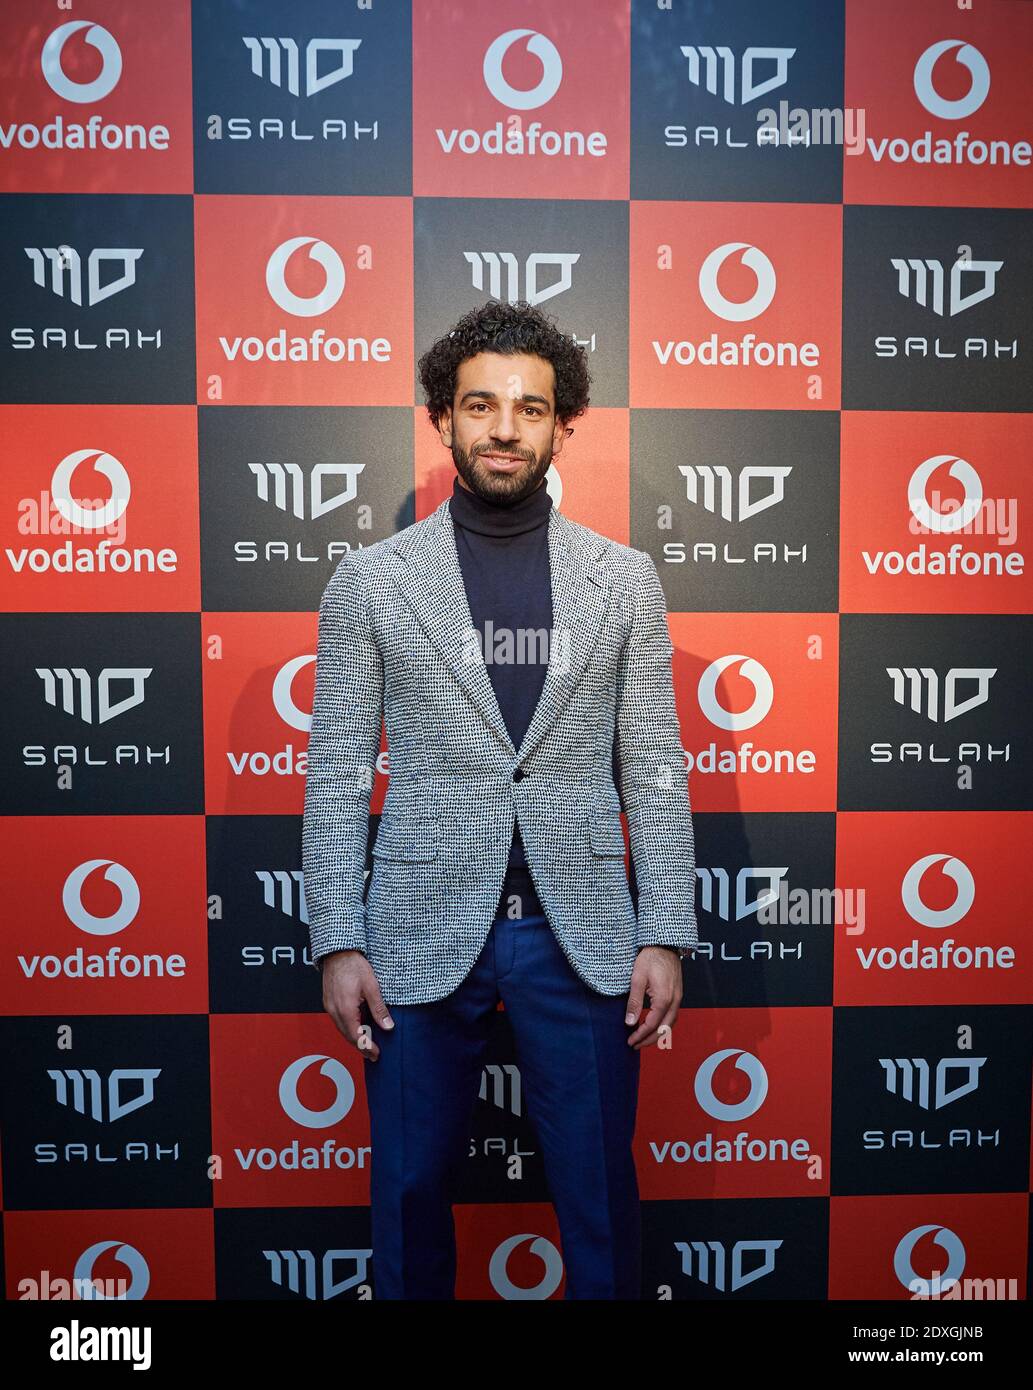 Mohamed Salah Hamed Mahrous Ghaly è un calciatore professionista egiziano che gioca come un avanti per il club della Premier League Liverpool. Foto Stock